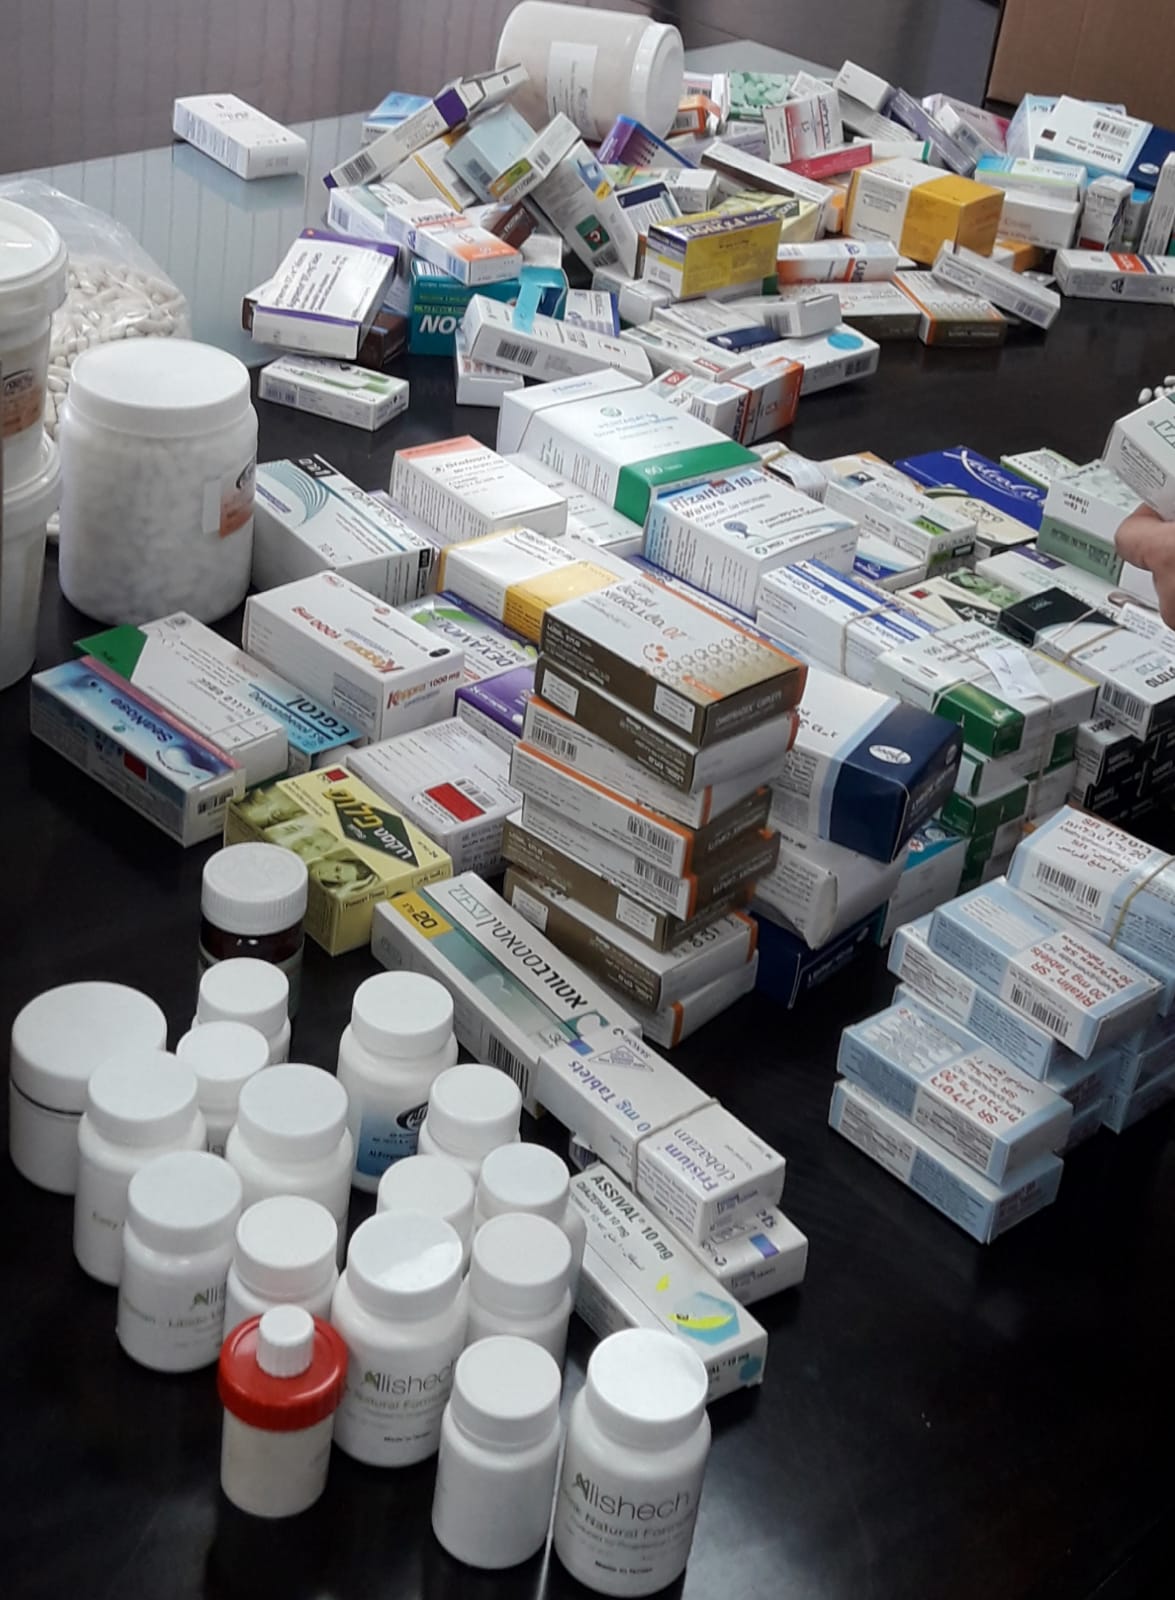 התרופות שנתפסו על ידי המשטרה | צילום: דוברות המשטרה